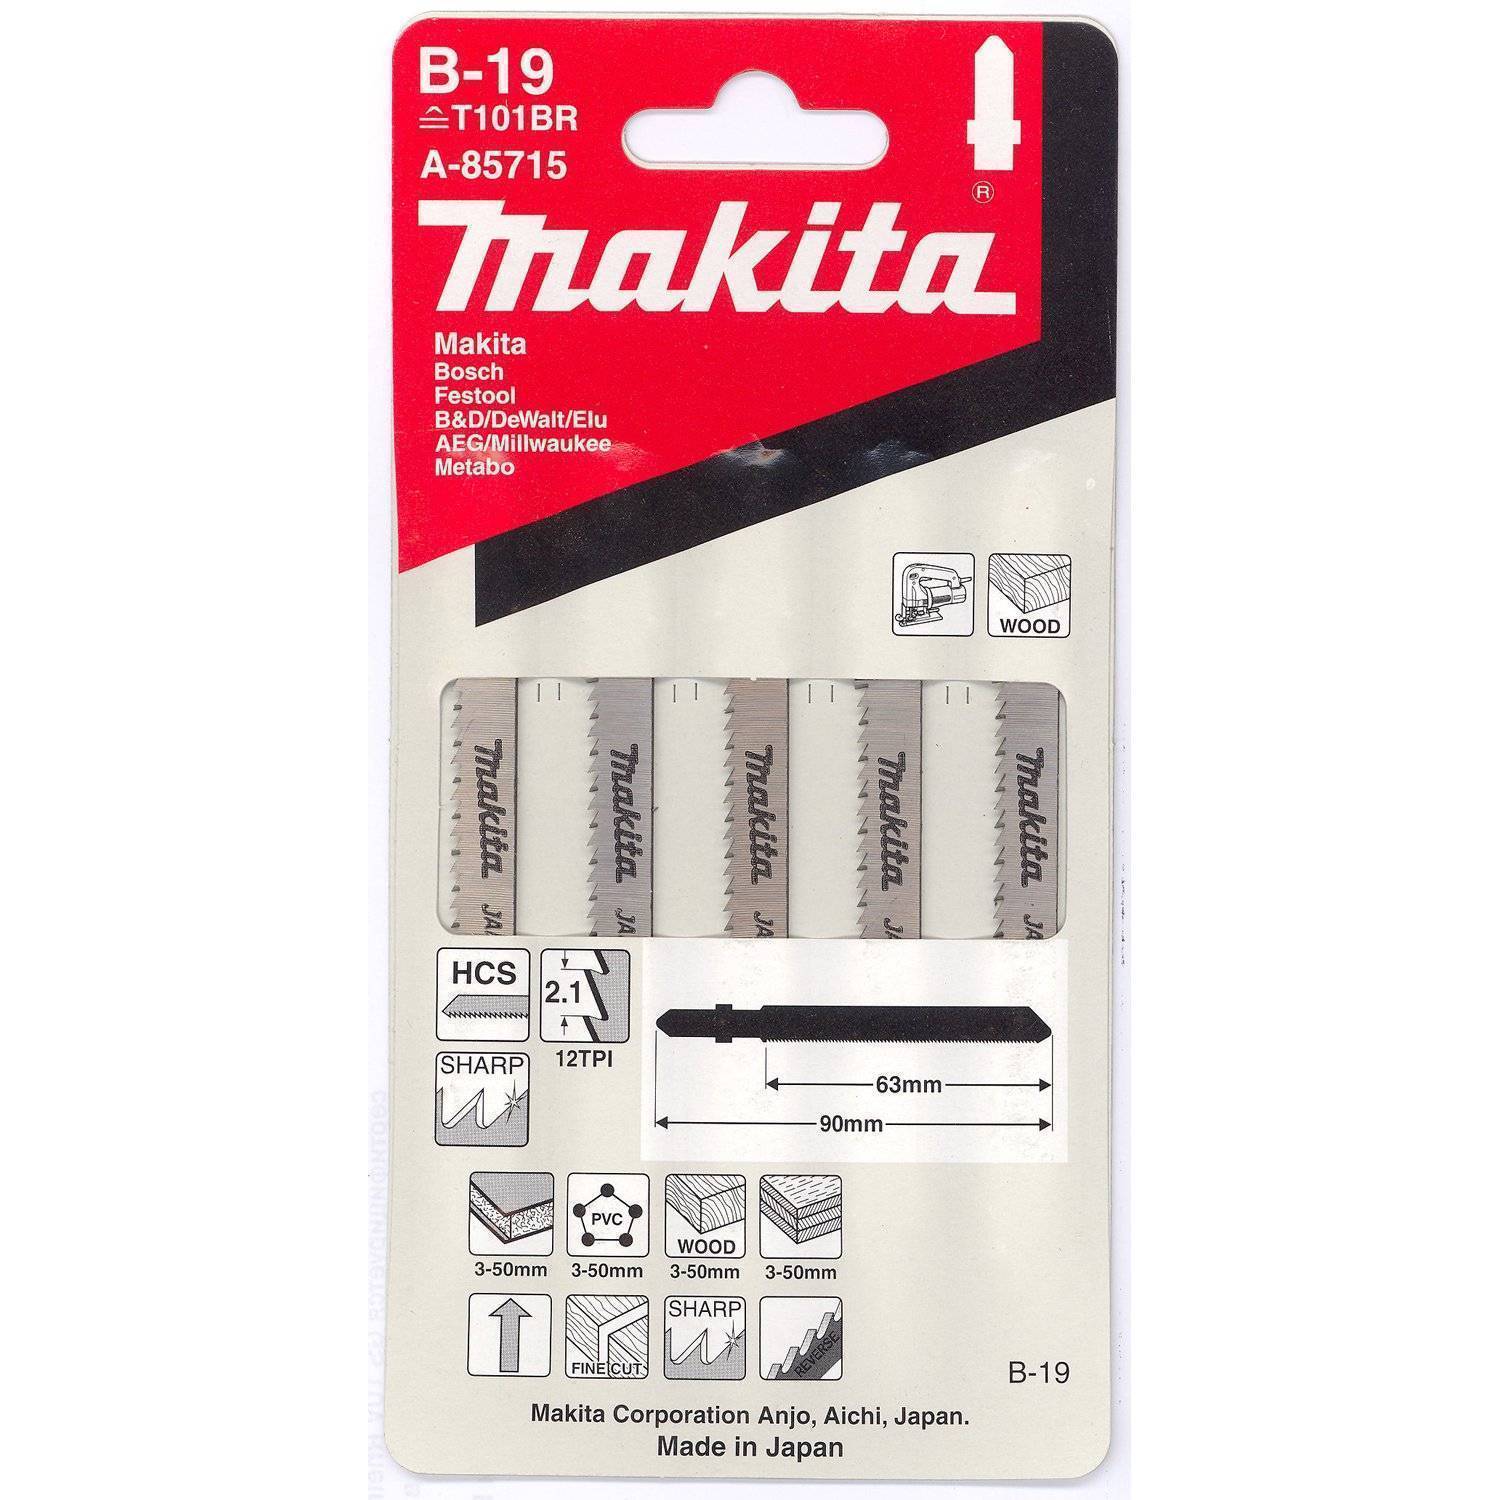 Пилки для лобзика Makita A-85715 5шт, B-19, HCS, 902.1мм, рез-50мм (T101BR)